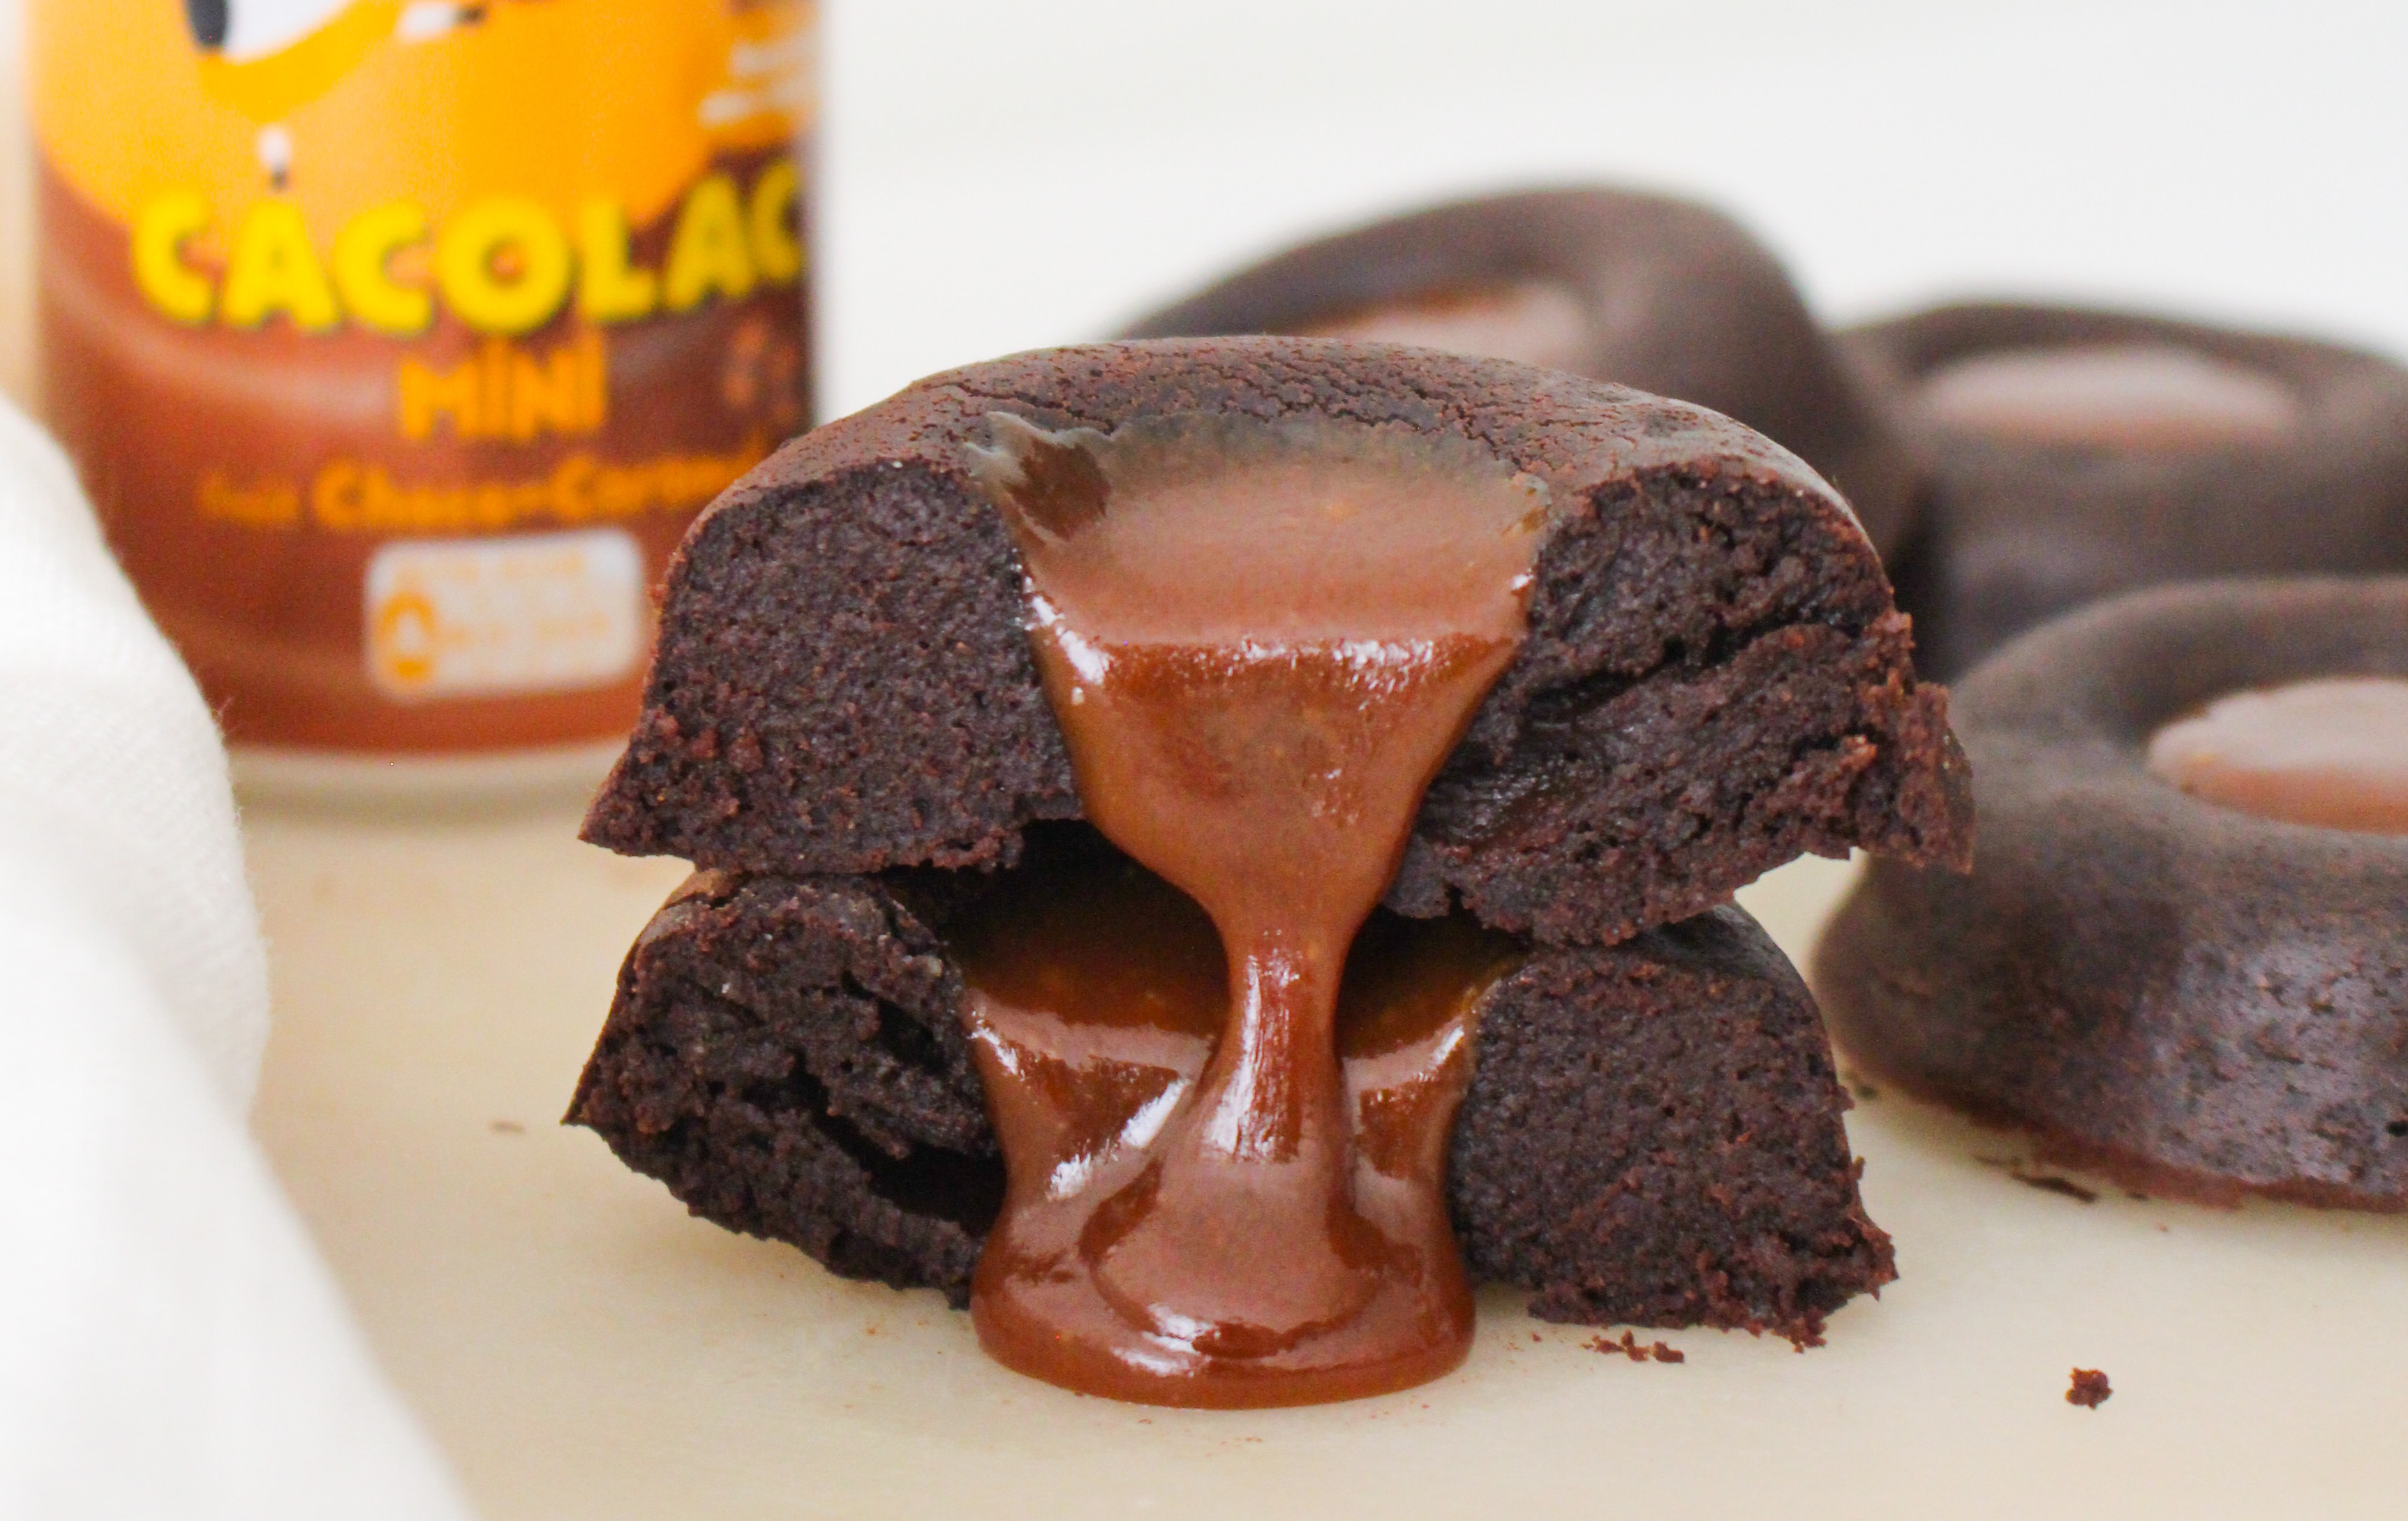 Brownie chocolat caramel au beurre salé : Il était une fois la